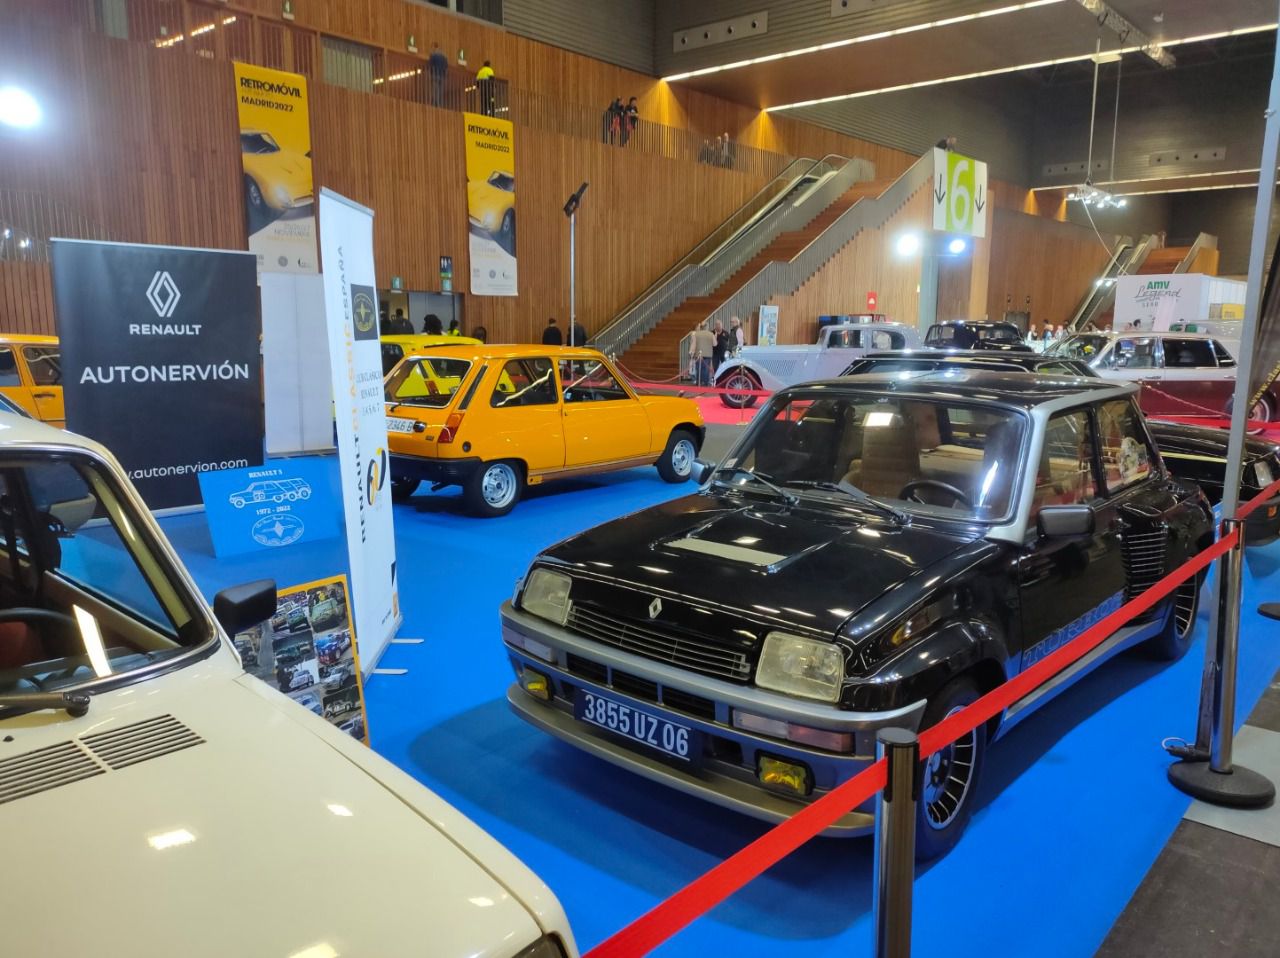 Recinto ferial conmemorativo del 50 aniversario del modelo Renault 5 (Renault Autonervion) (Autor: Jaime Muro)